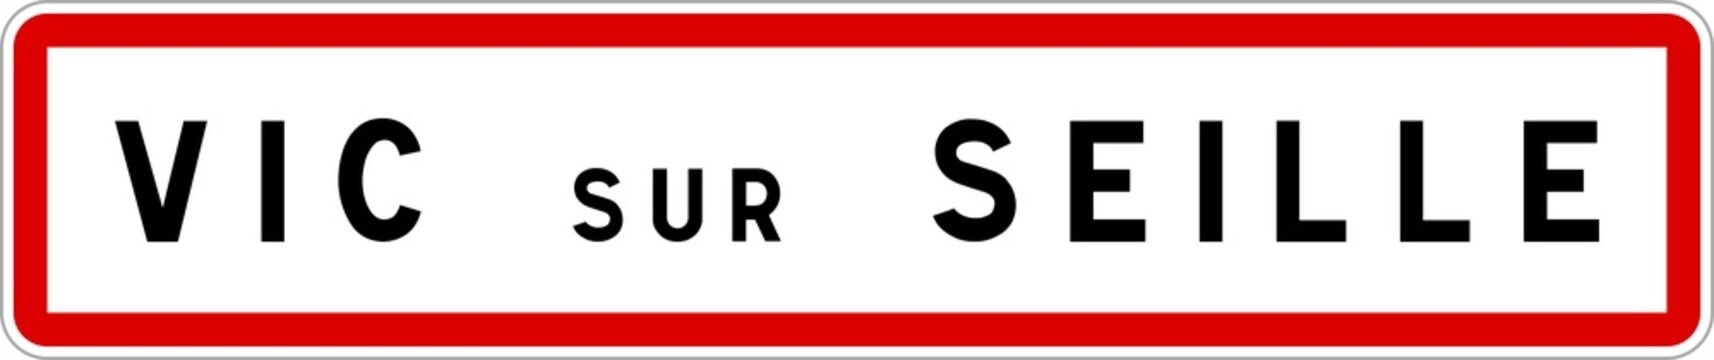 Panneau entrée ville agglomération Vic-sur-Seille / Town entrance sign Vic-sur-Seille